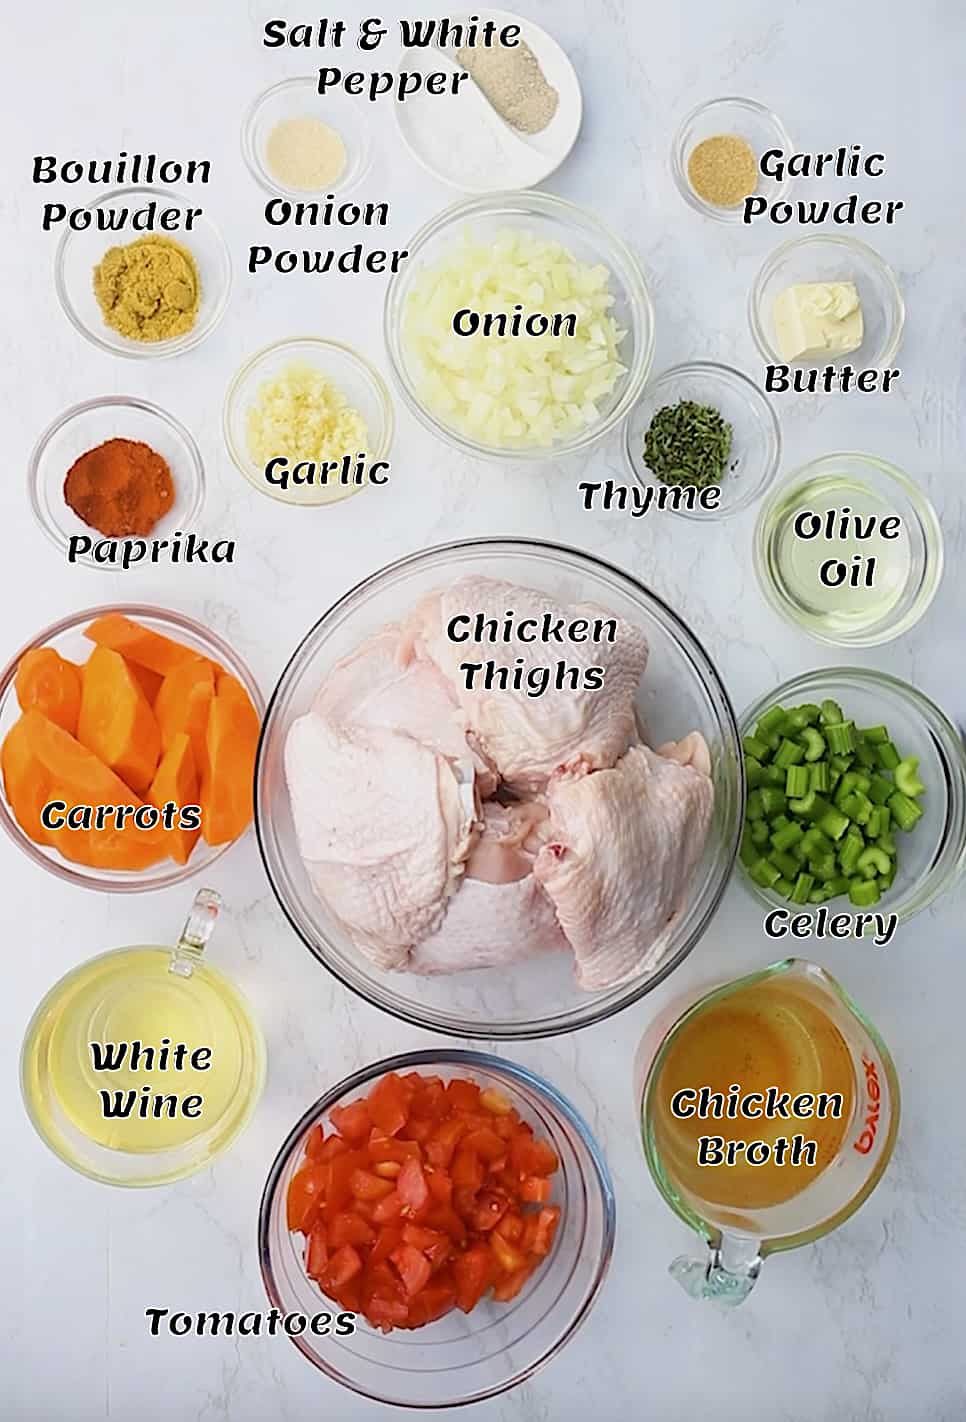 Braised Chicken Thighs recipe ingredients